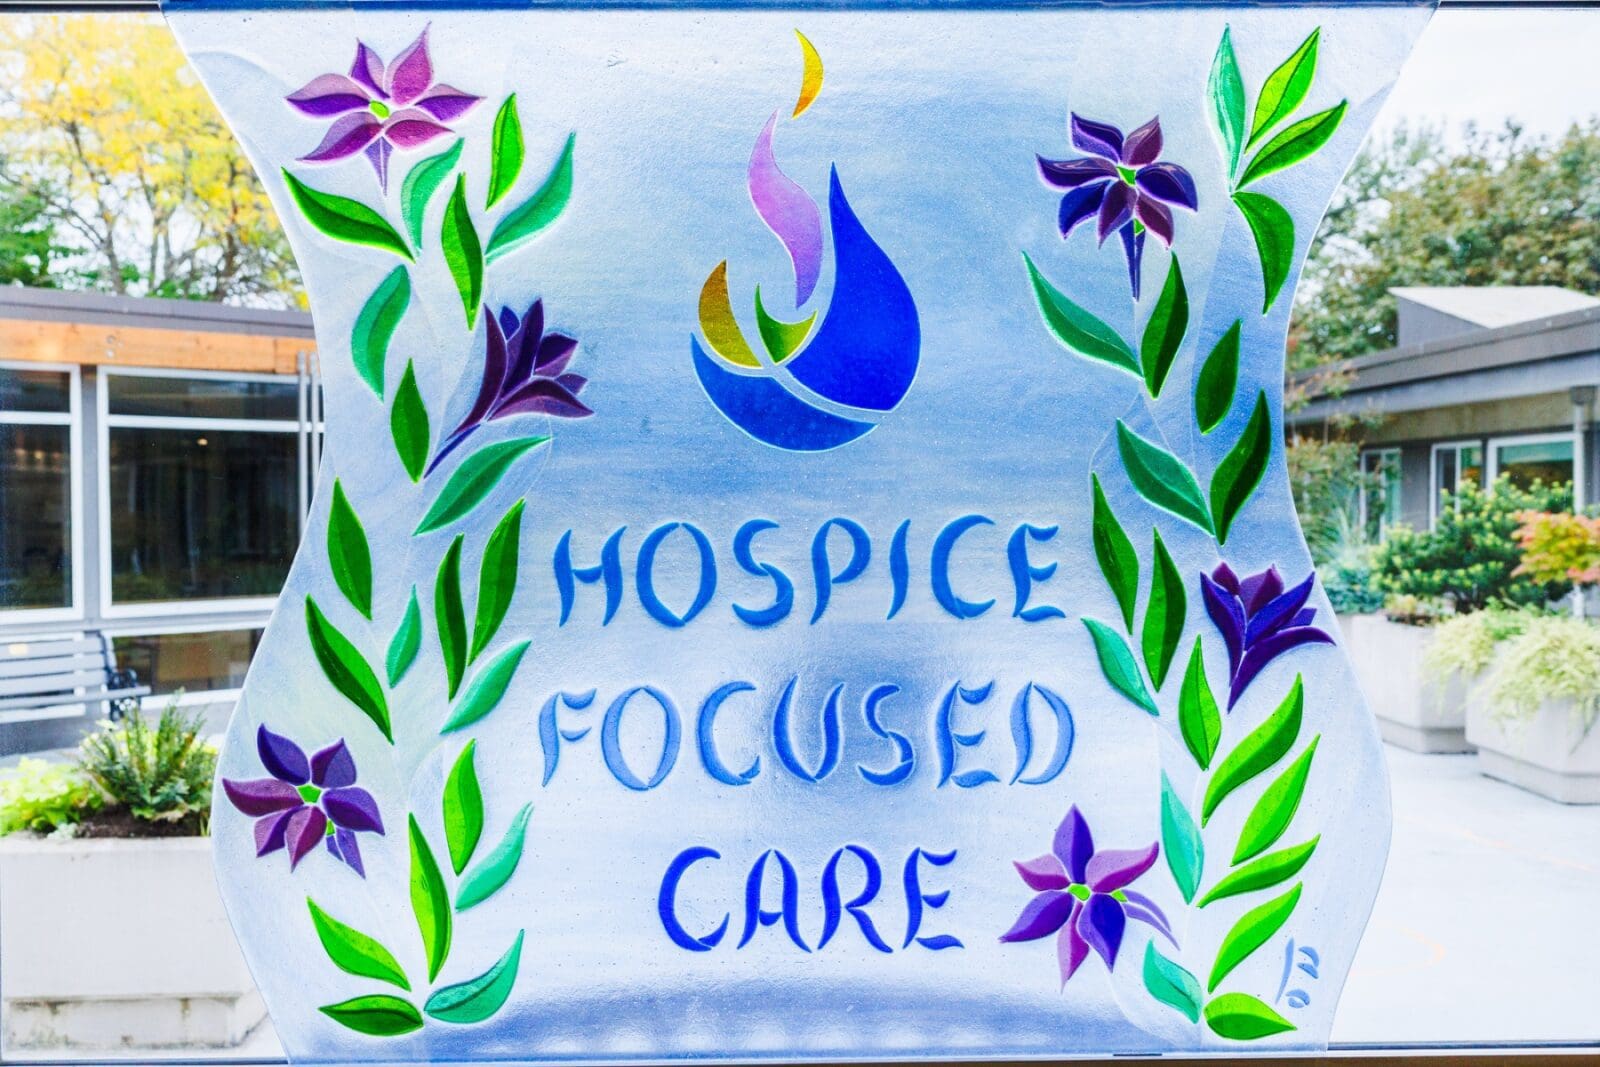 Hospice Focused Care Unit